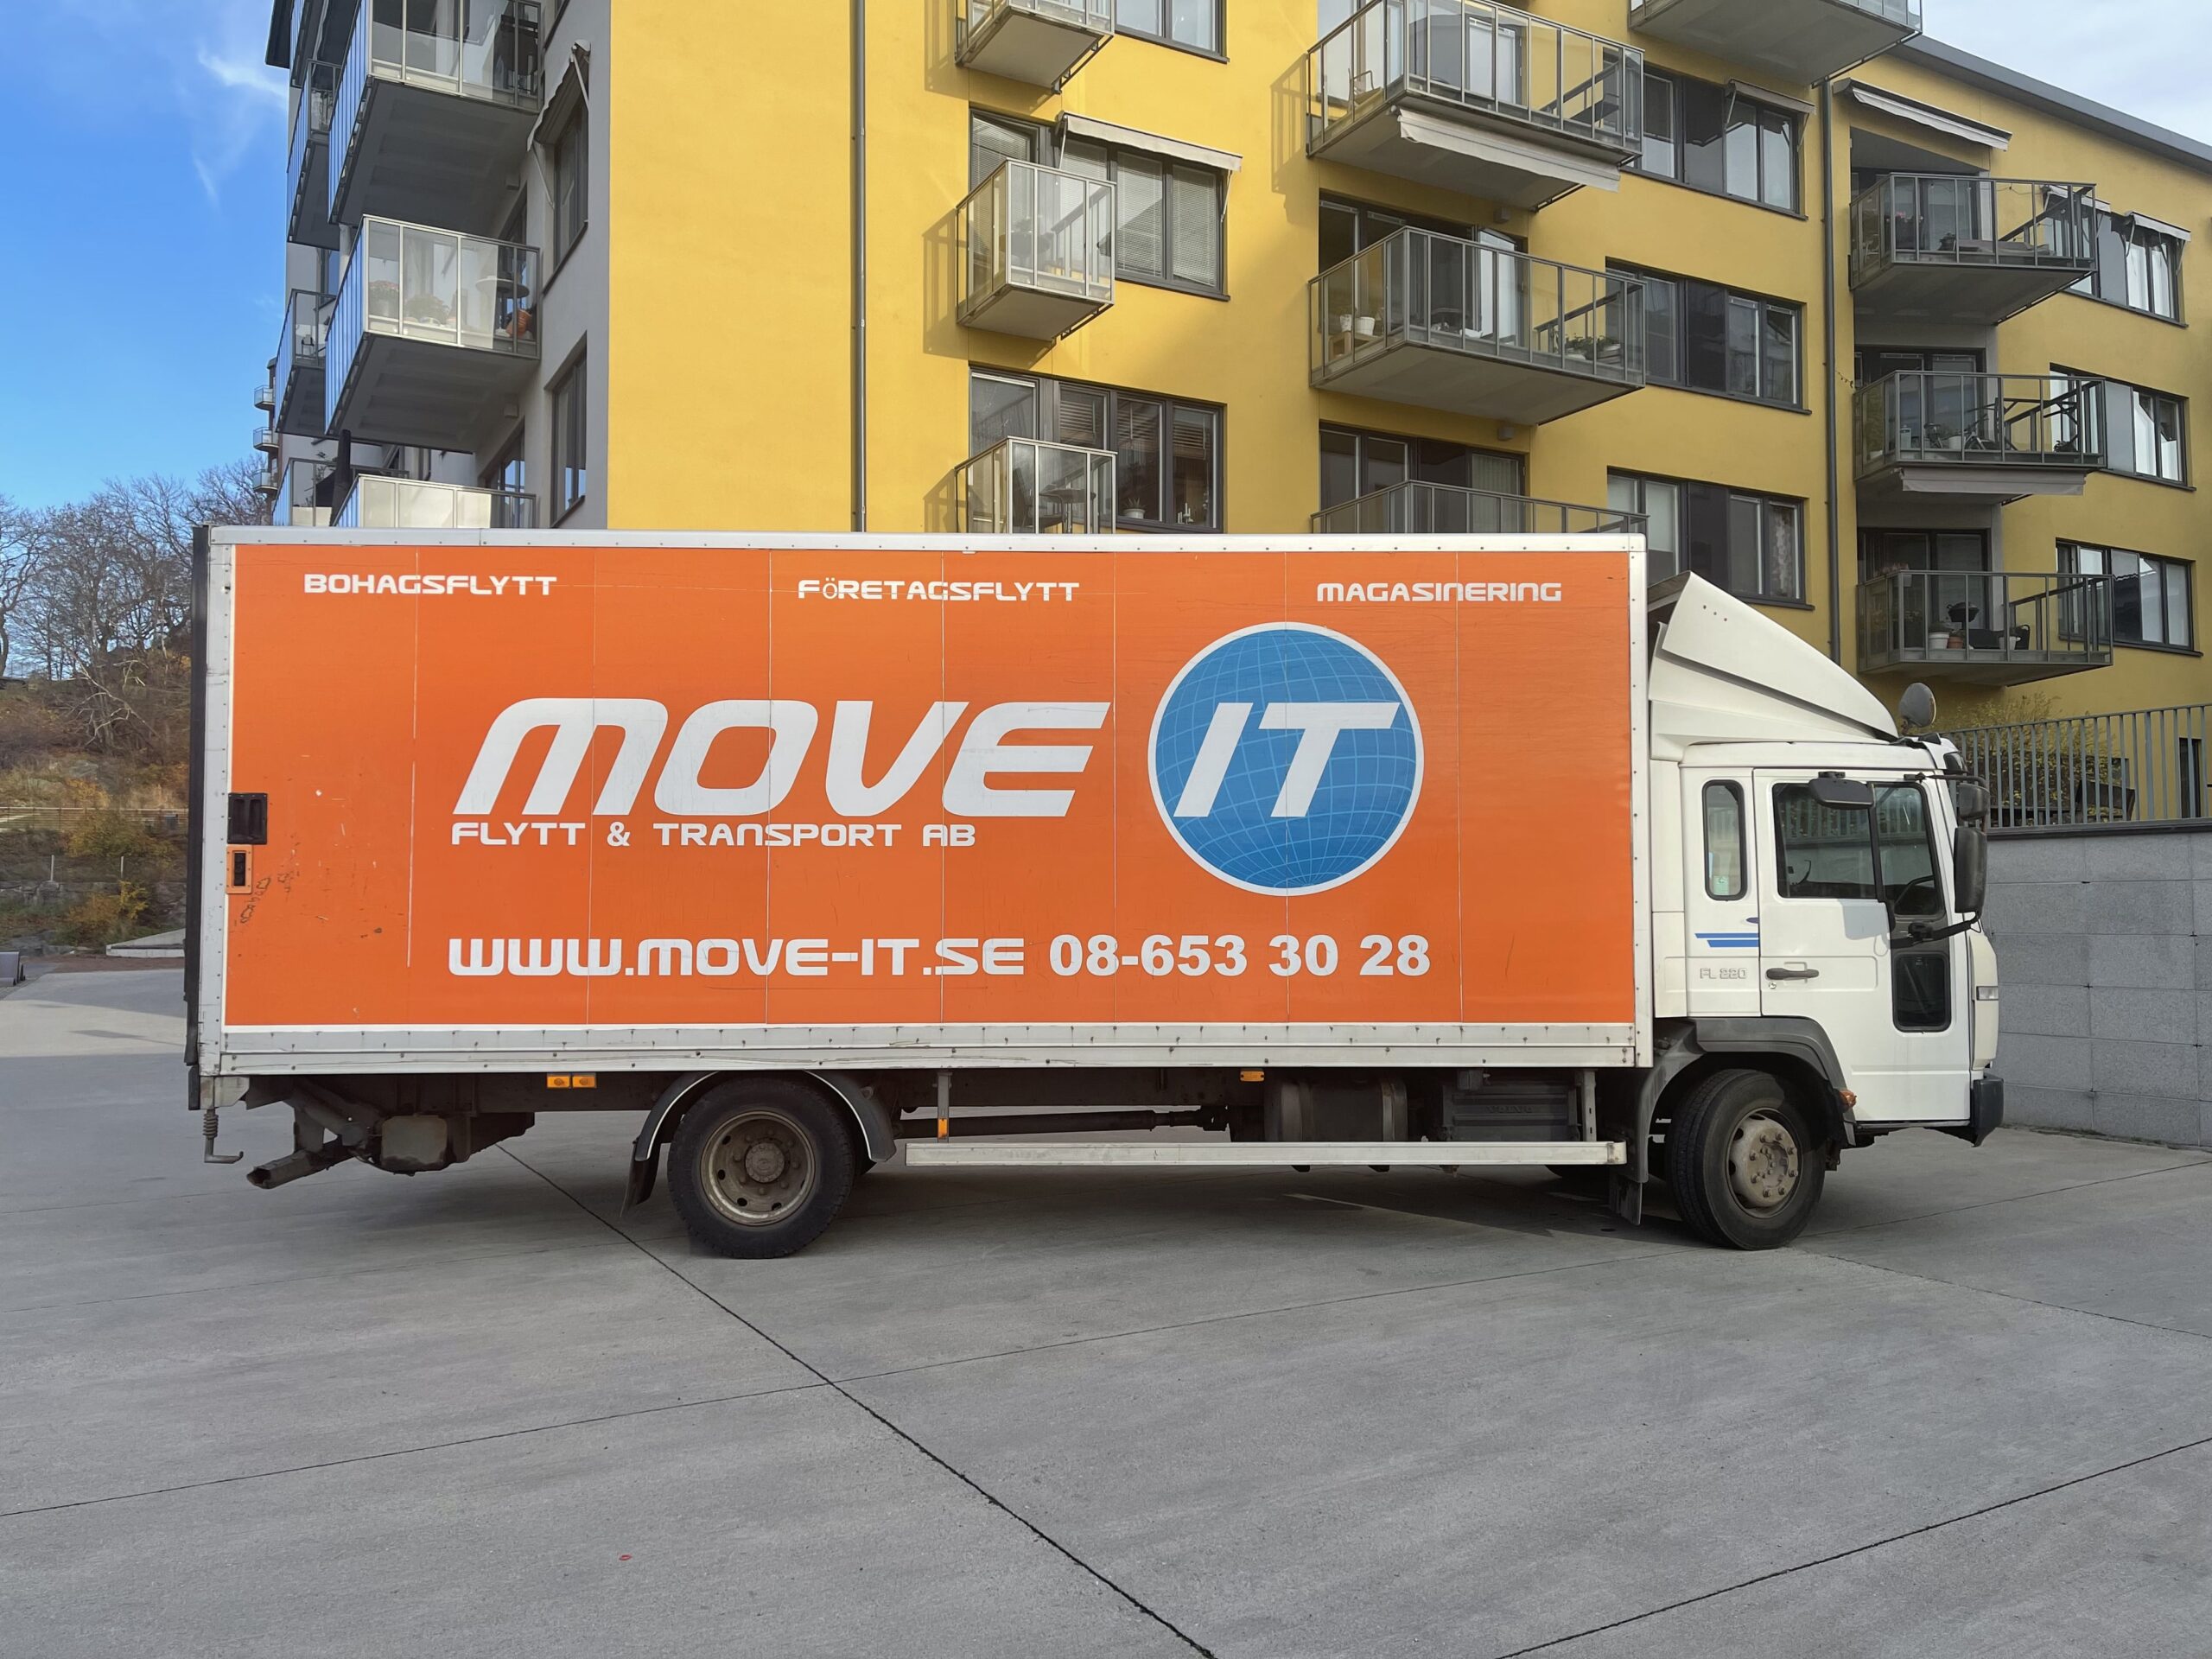 Flyttfirman Move it hjälper till med en flytt